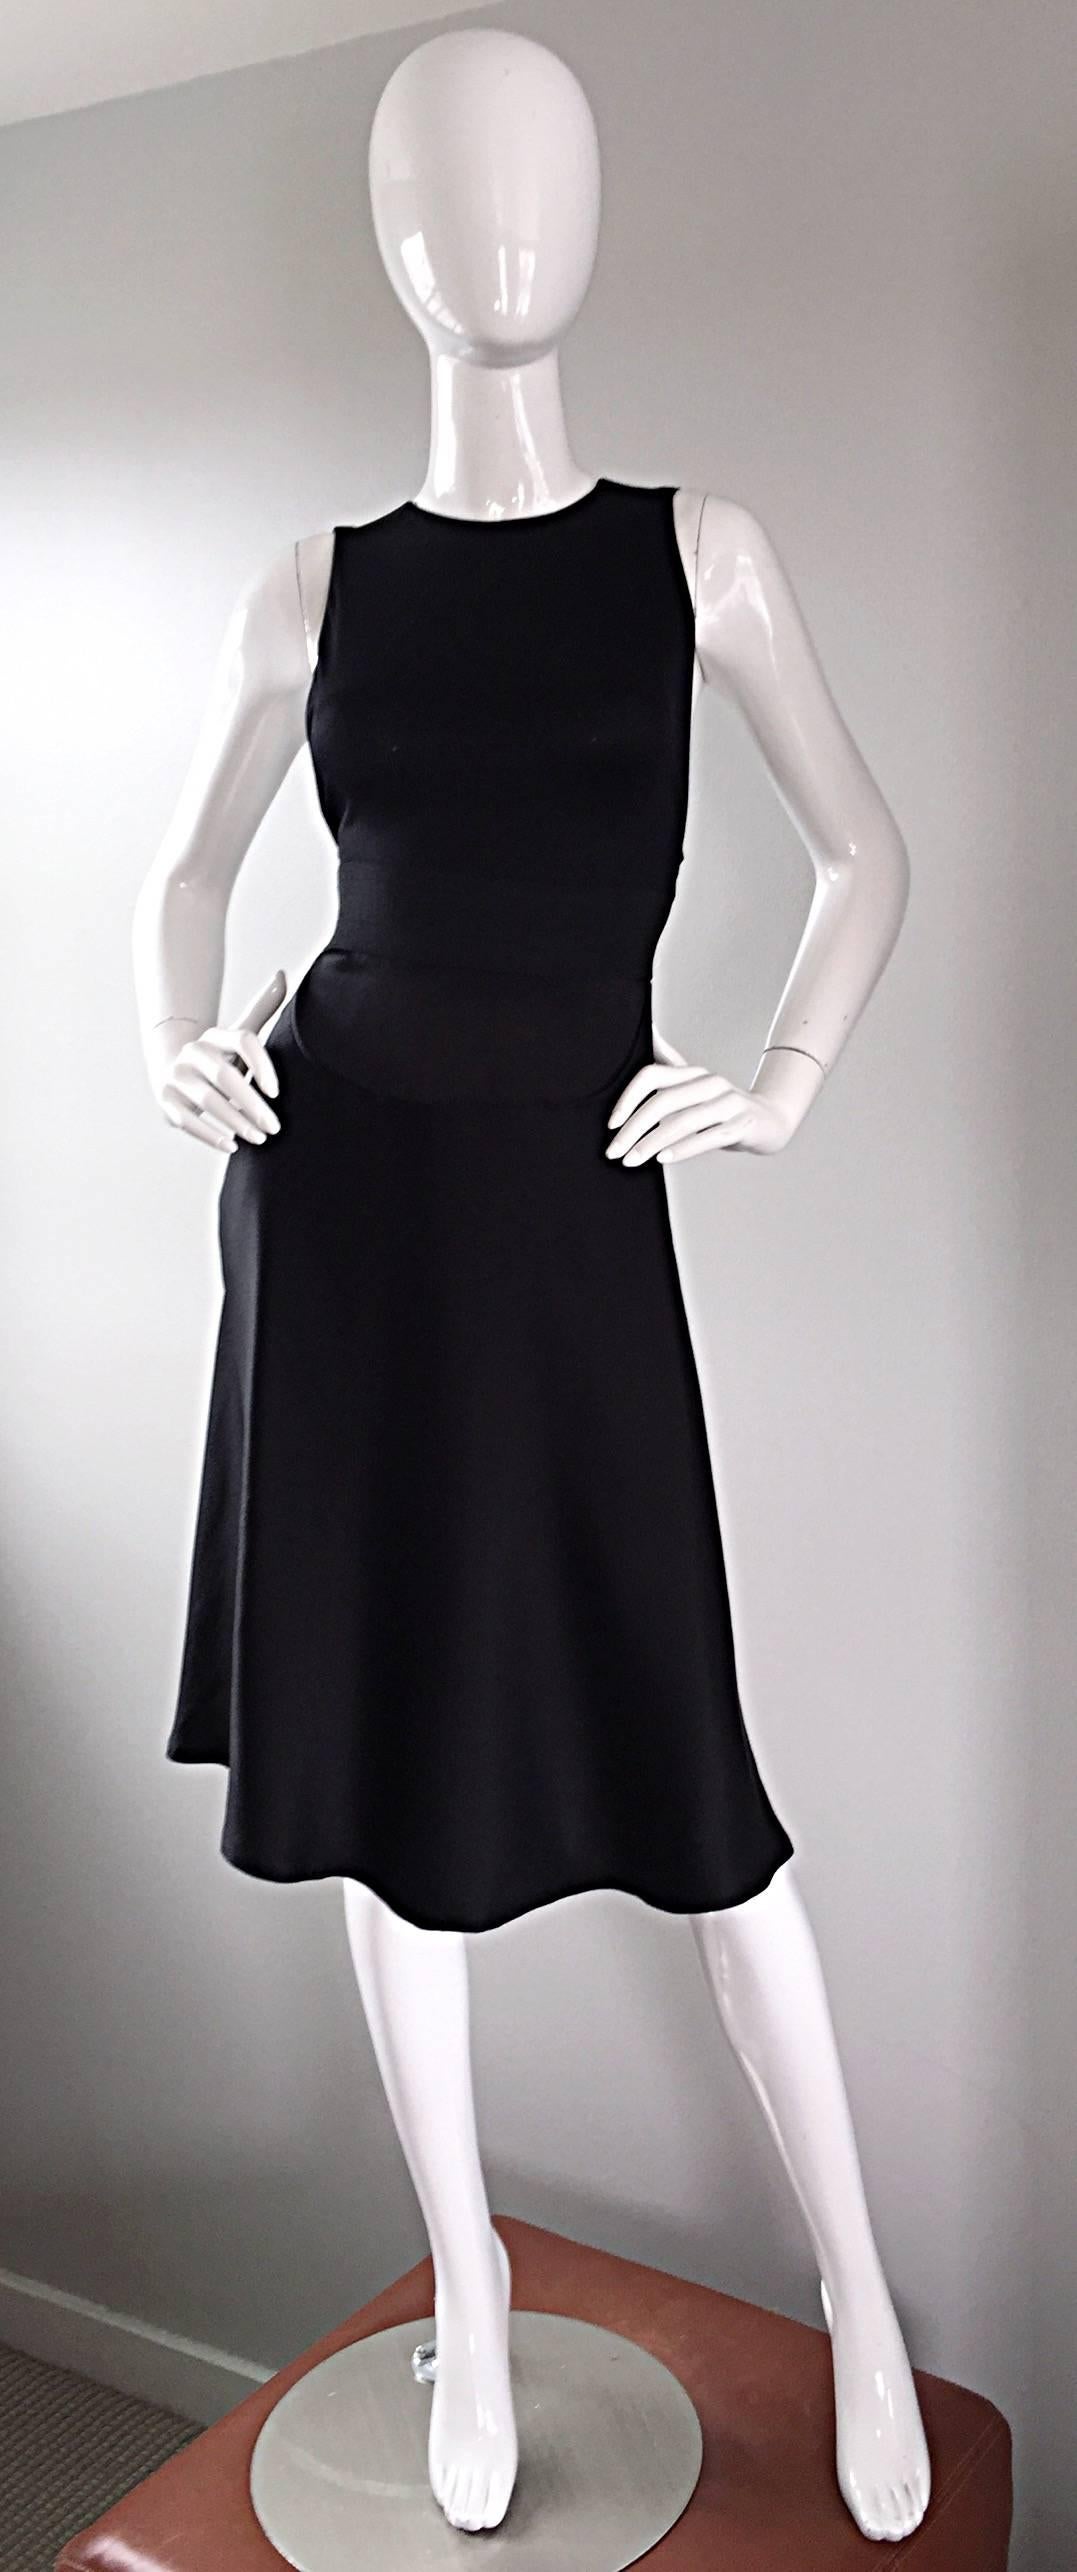 Erstaunlich 90er GEOFFREY BEENE schwarz Seide minimalistischen Kleid! Mit schmeichelhaftem, kreuzförmigem Stretch-Rücken und schwarzem Reißverschluss. In der Taille gebündelt, mit abfallendem Volantsaum. Verdeckter Reißverschluss auf der Rückseite